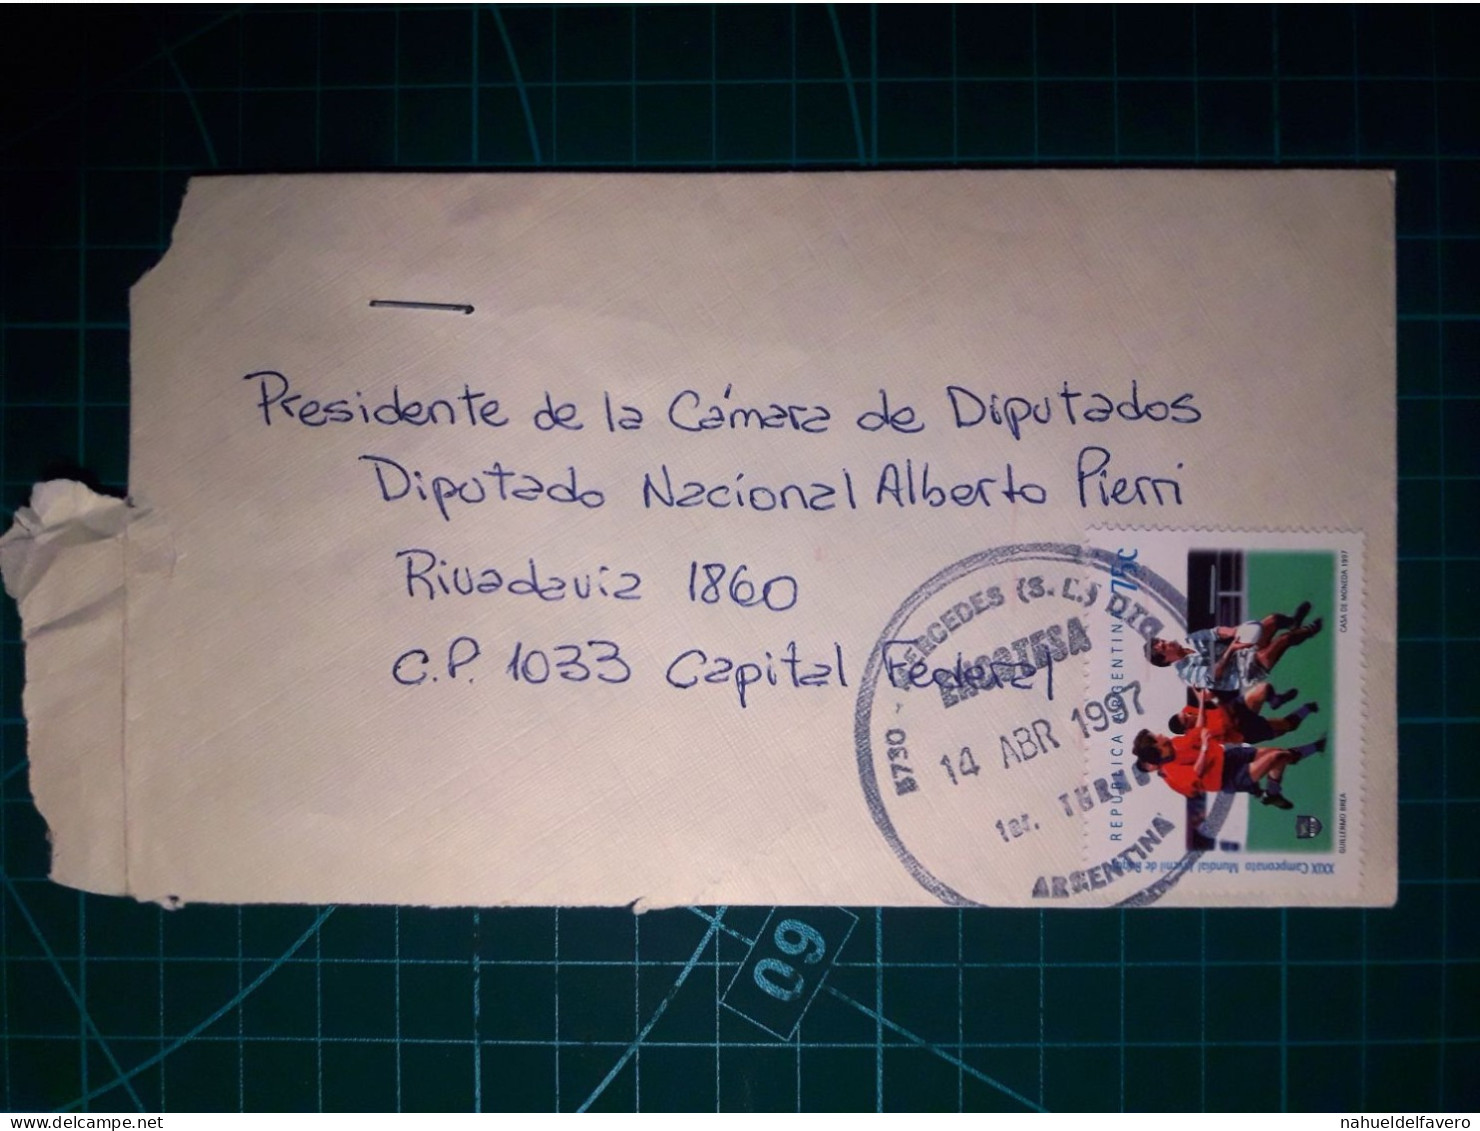 ARGENTINE, Enveloppe Circulée De La Ville De Mercedes à La Capitale Fédérale. Année 1997. - Used Stamps